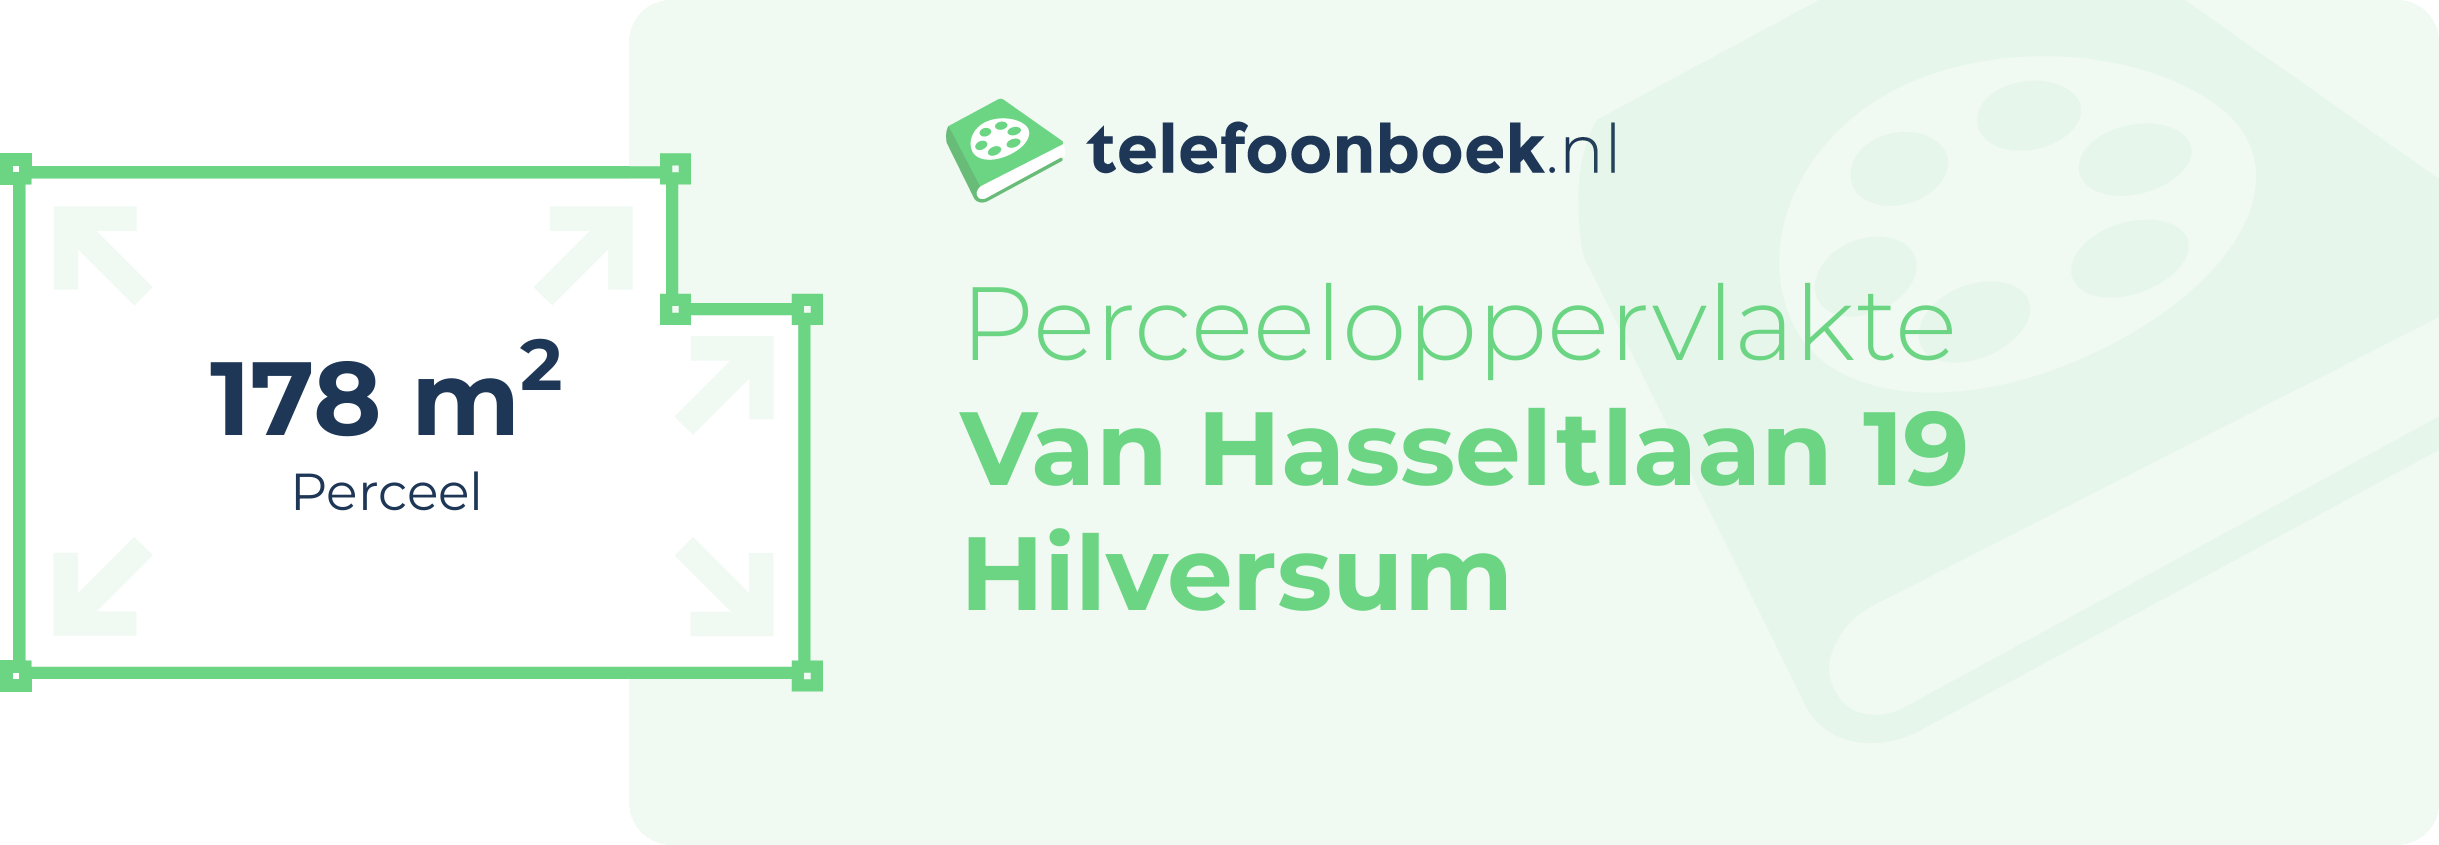 Perceeloppervlakte Van Hasseltlaan 19 Hilversum